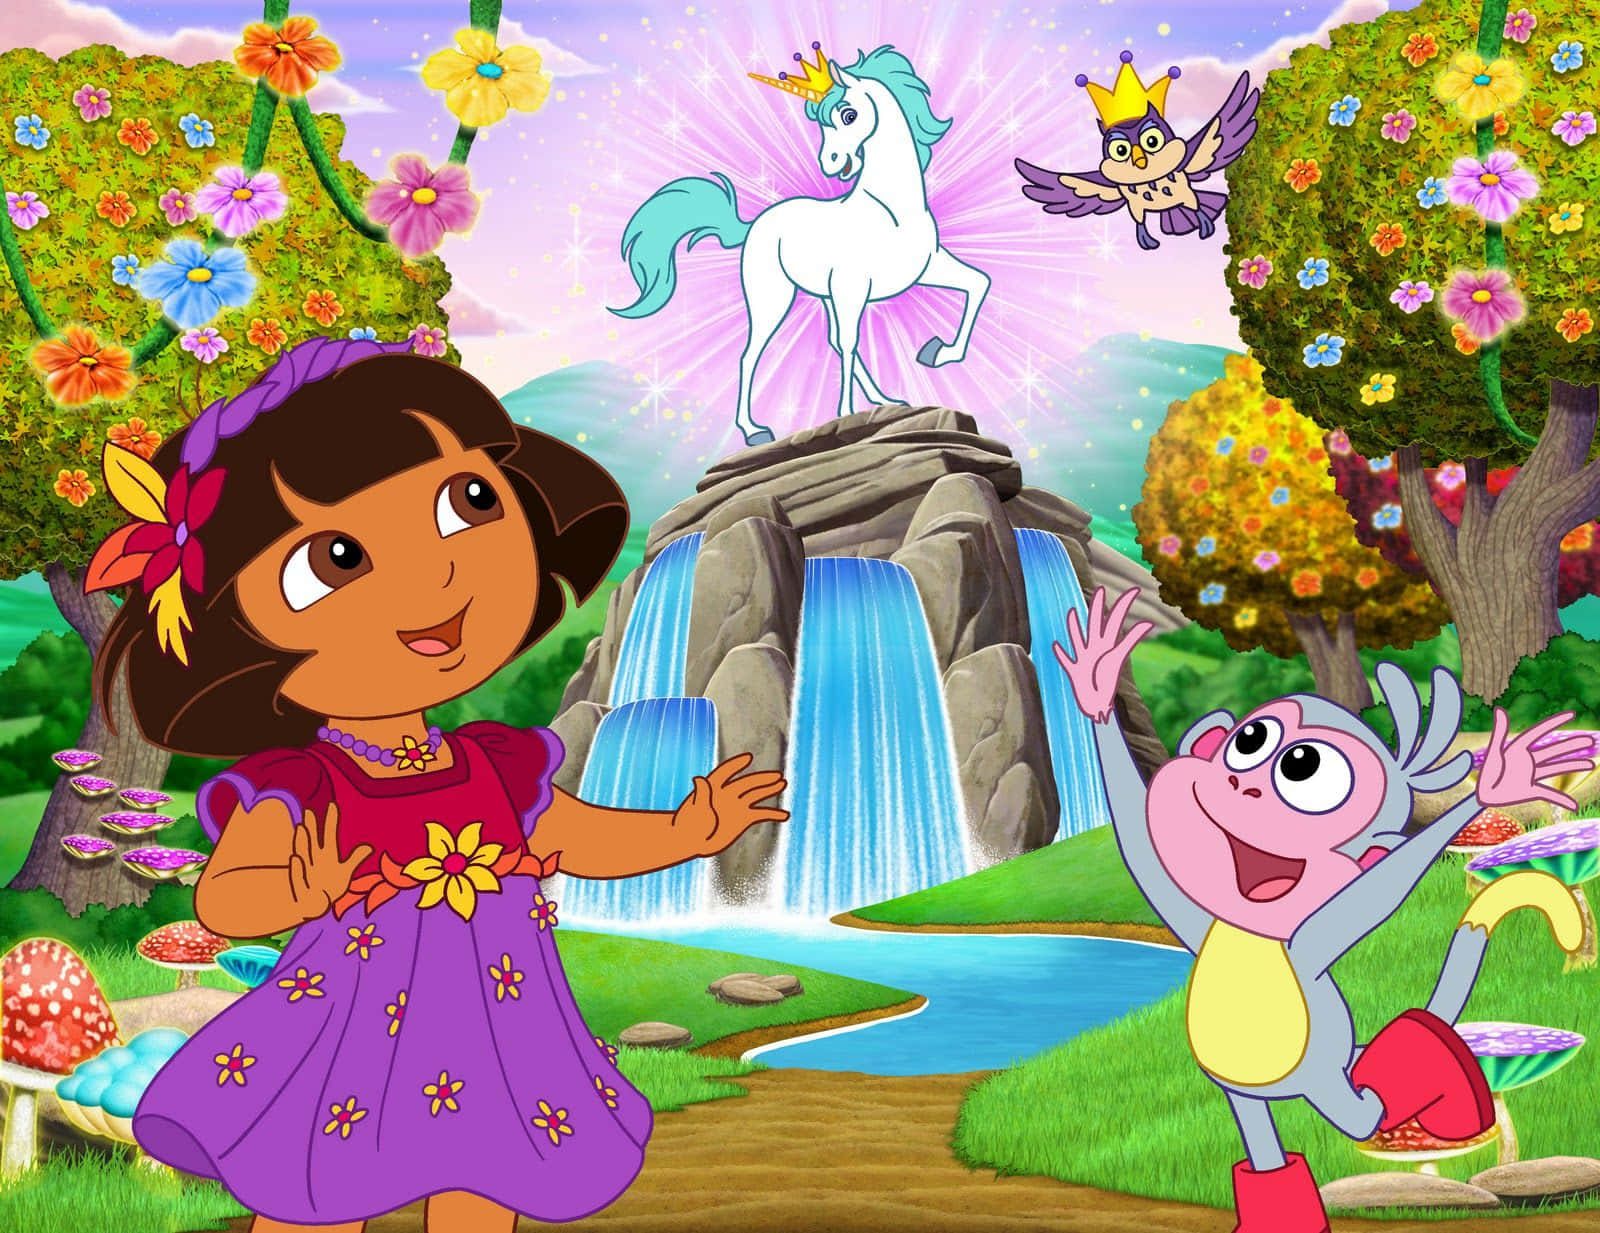 Willkommenin Einer Welt Voller Spaß Und Abenteuer Mit Dora!